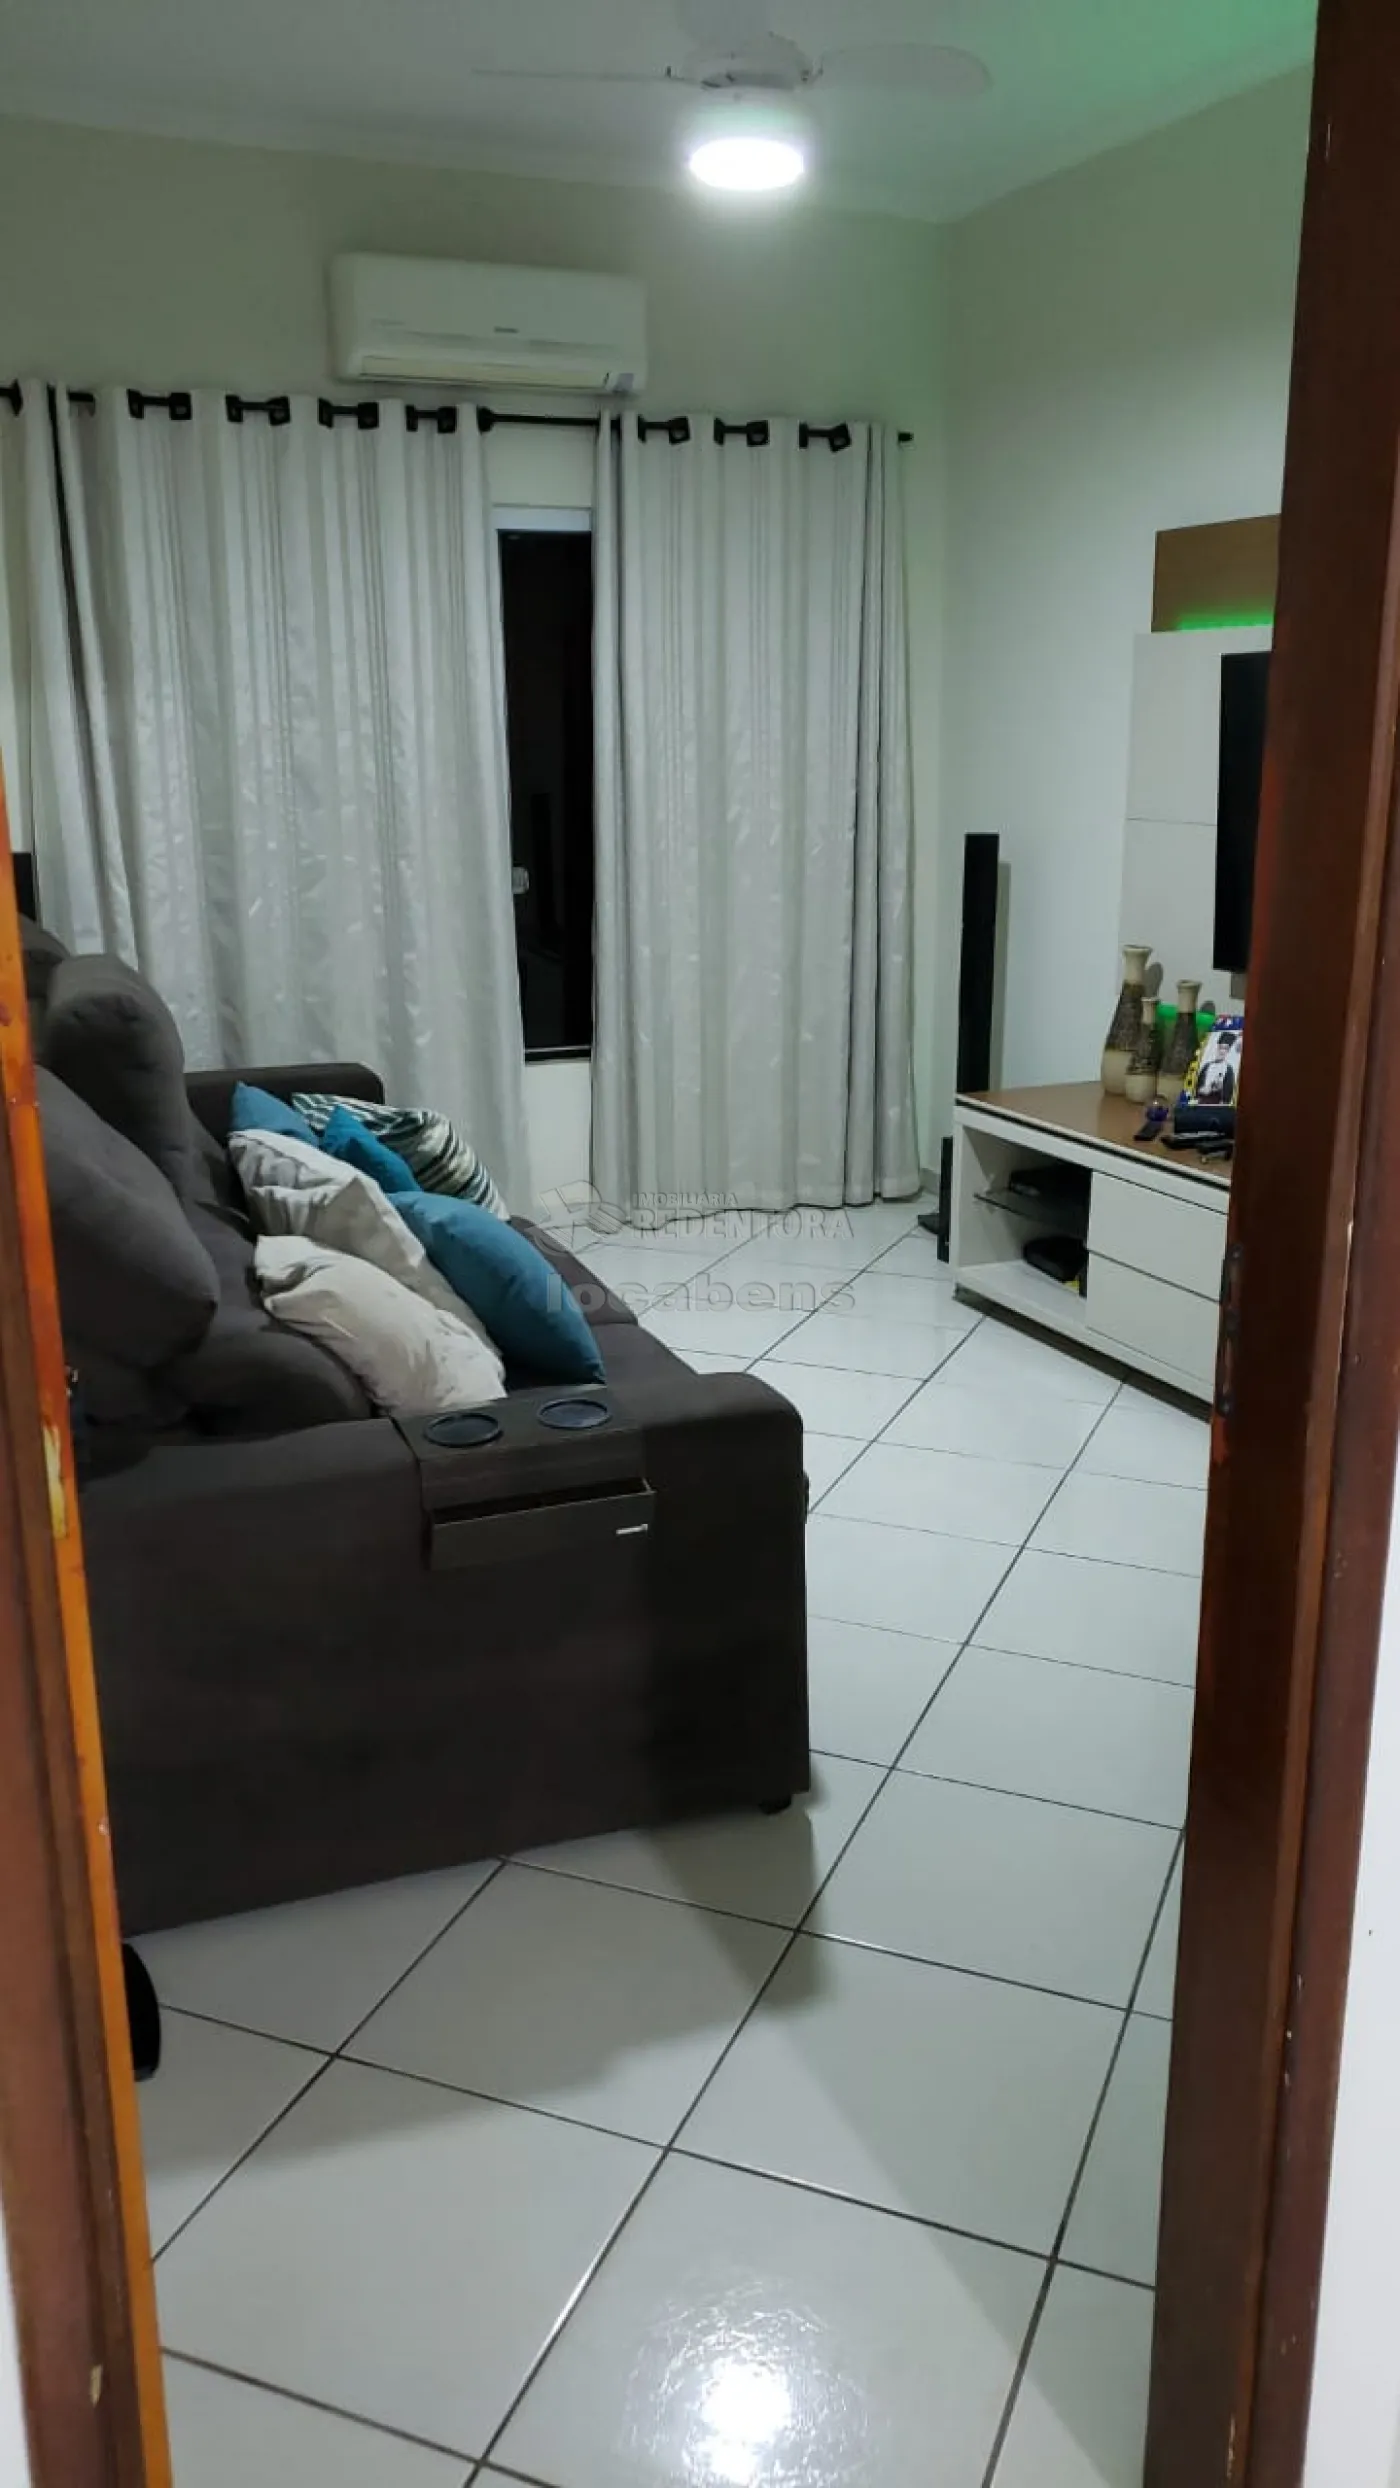 Comprar Casa / Padrão em São José do Rio Preto apenas R$ 480.000,00 - Foto 5